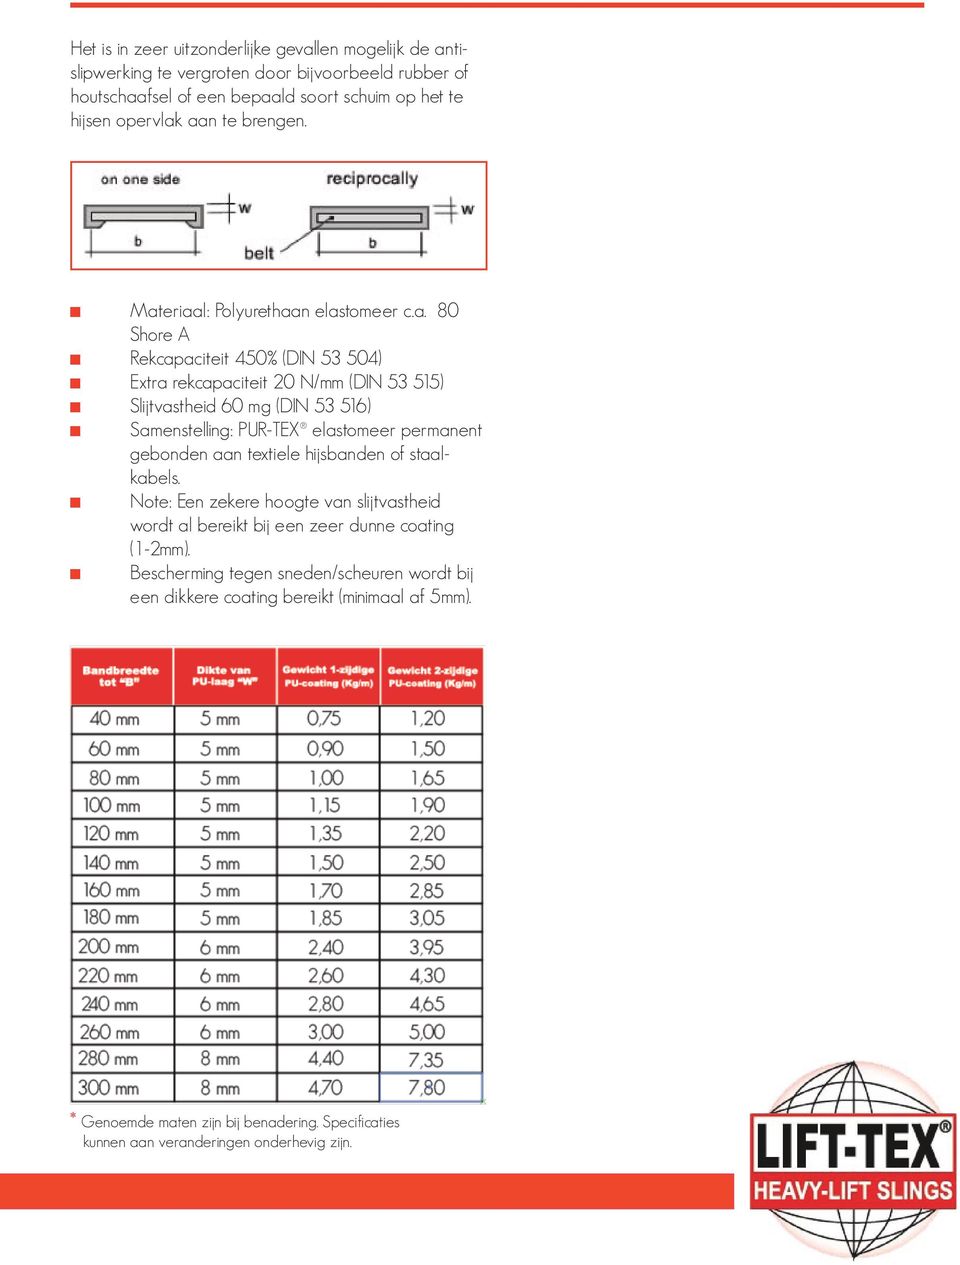 eriaal: Polyurethaan elastomeer c.a. 80 Shore A Rekcapaciteit 450% (DIN 53 504) Extra rekcapaciteit 20 N/mm (DIN 53 515) Slijtvastheid 60 mg (DIN 53 516) Samenstelling: PUR-TEX